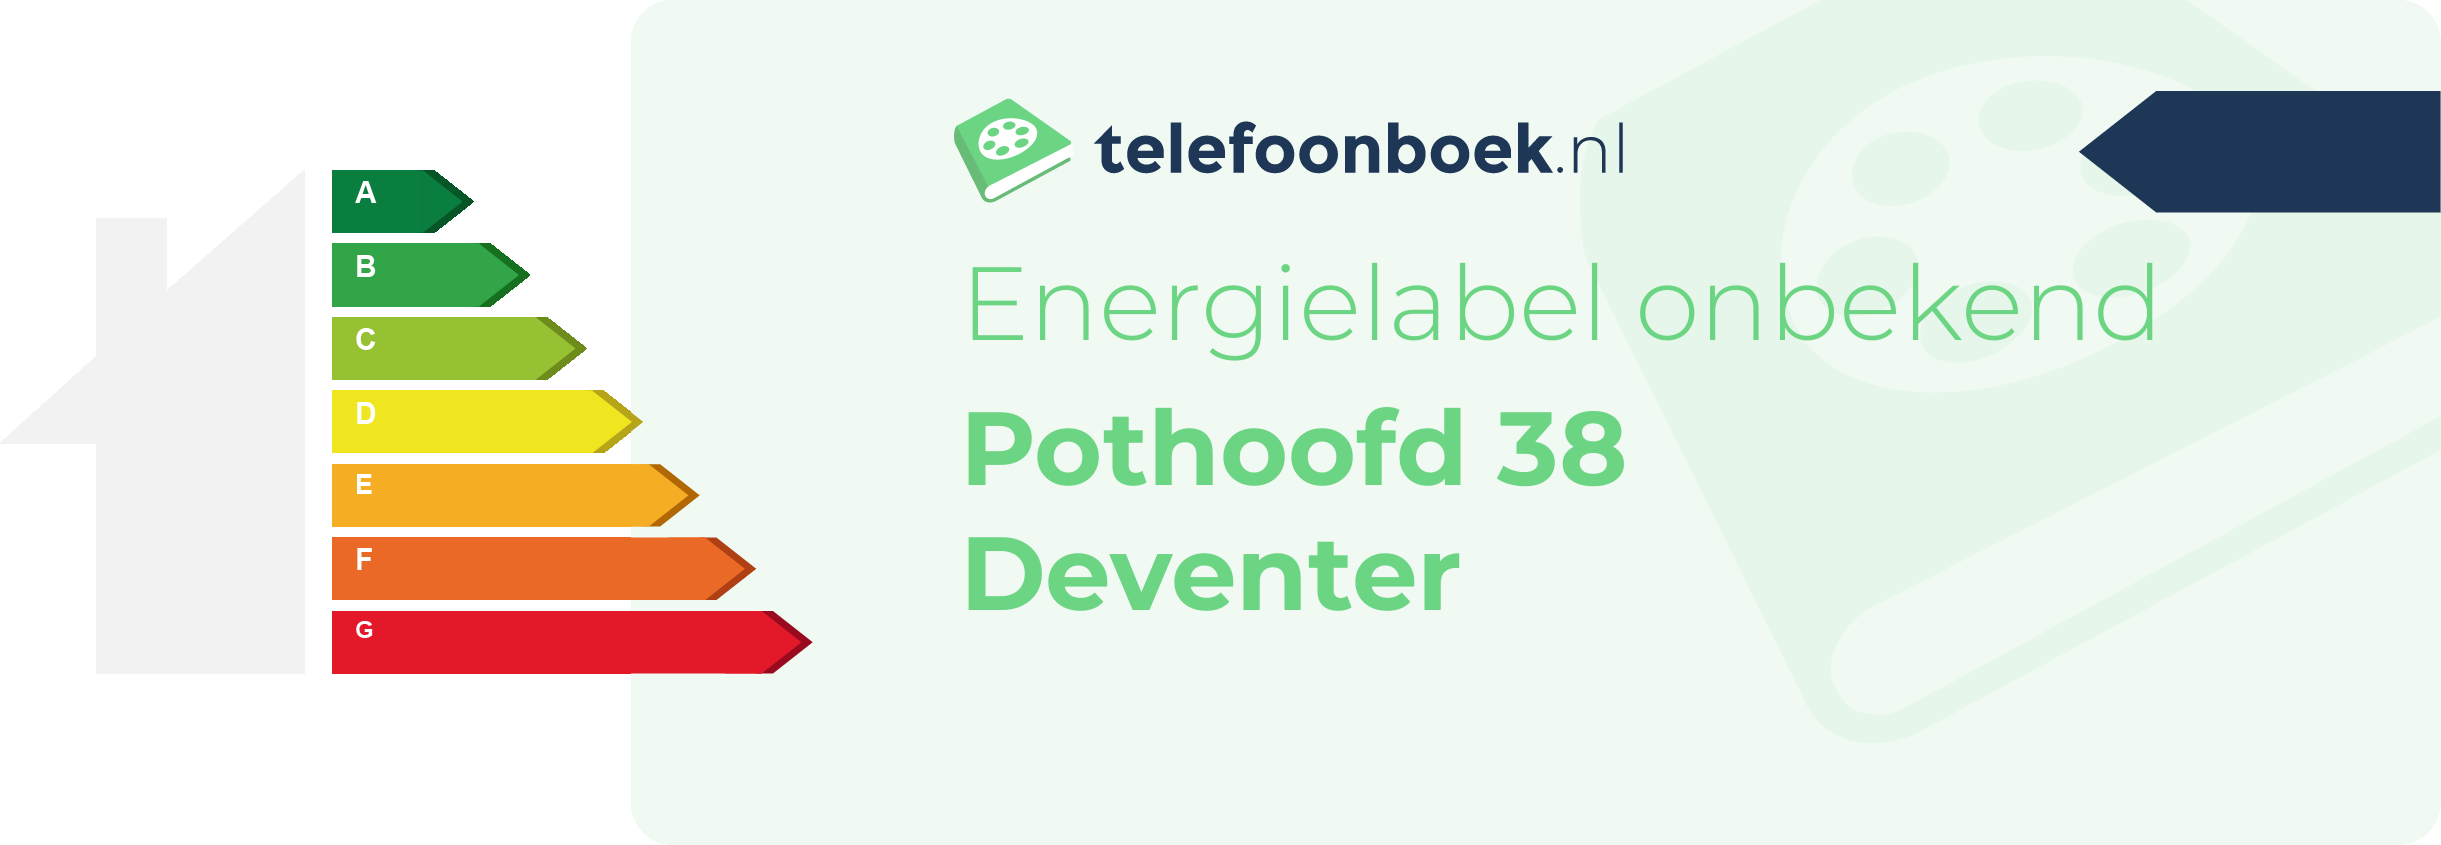 Energielabel Pothoofd 38 Deventer